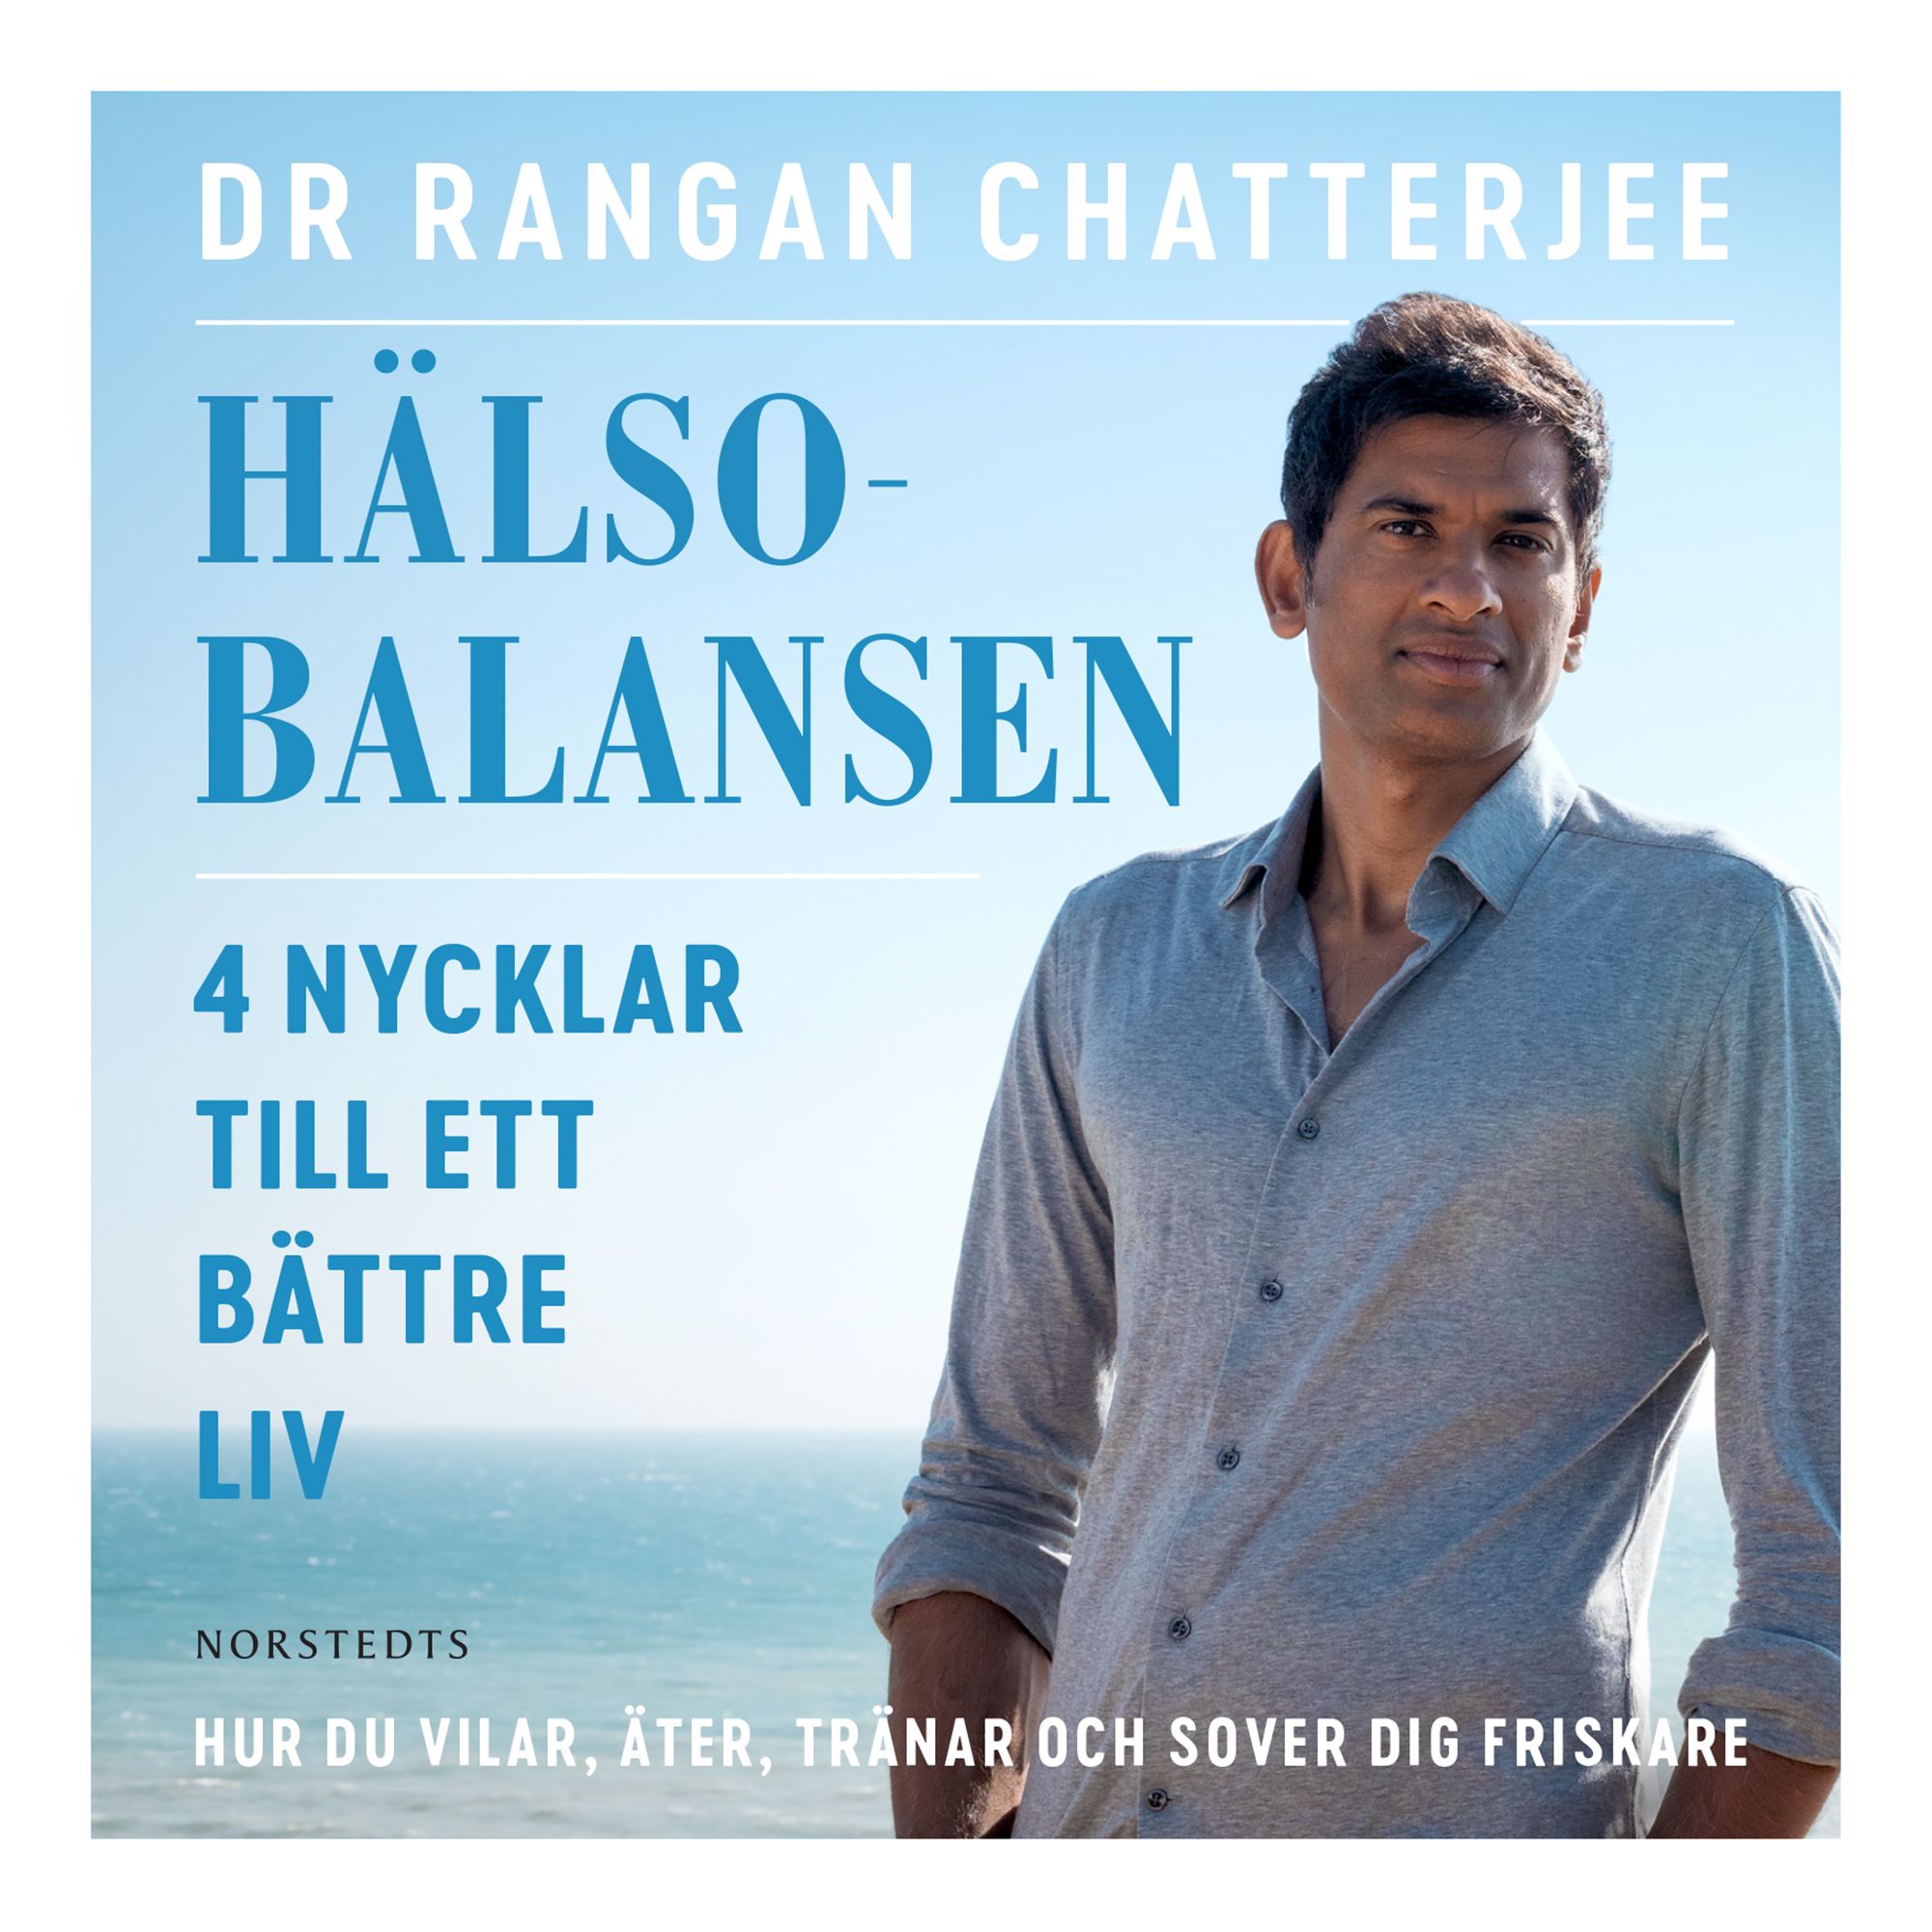 Hälsobalansen : 4 nycklar till ett bättre liv - hur du vilar, äter, tränar och sover dig friskare, ljudbok av Rangan Chatterjee